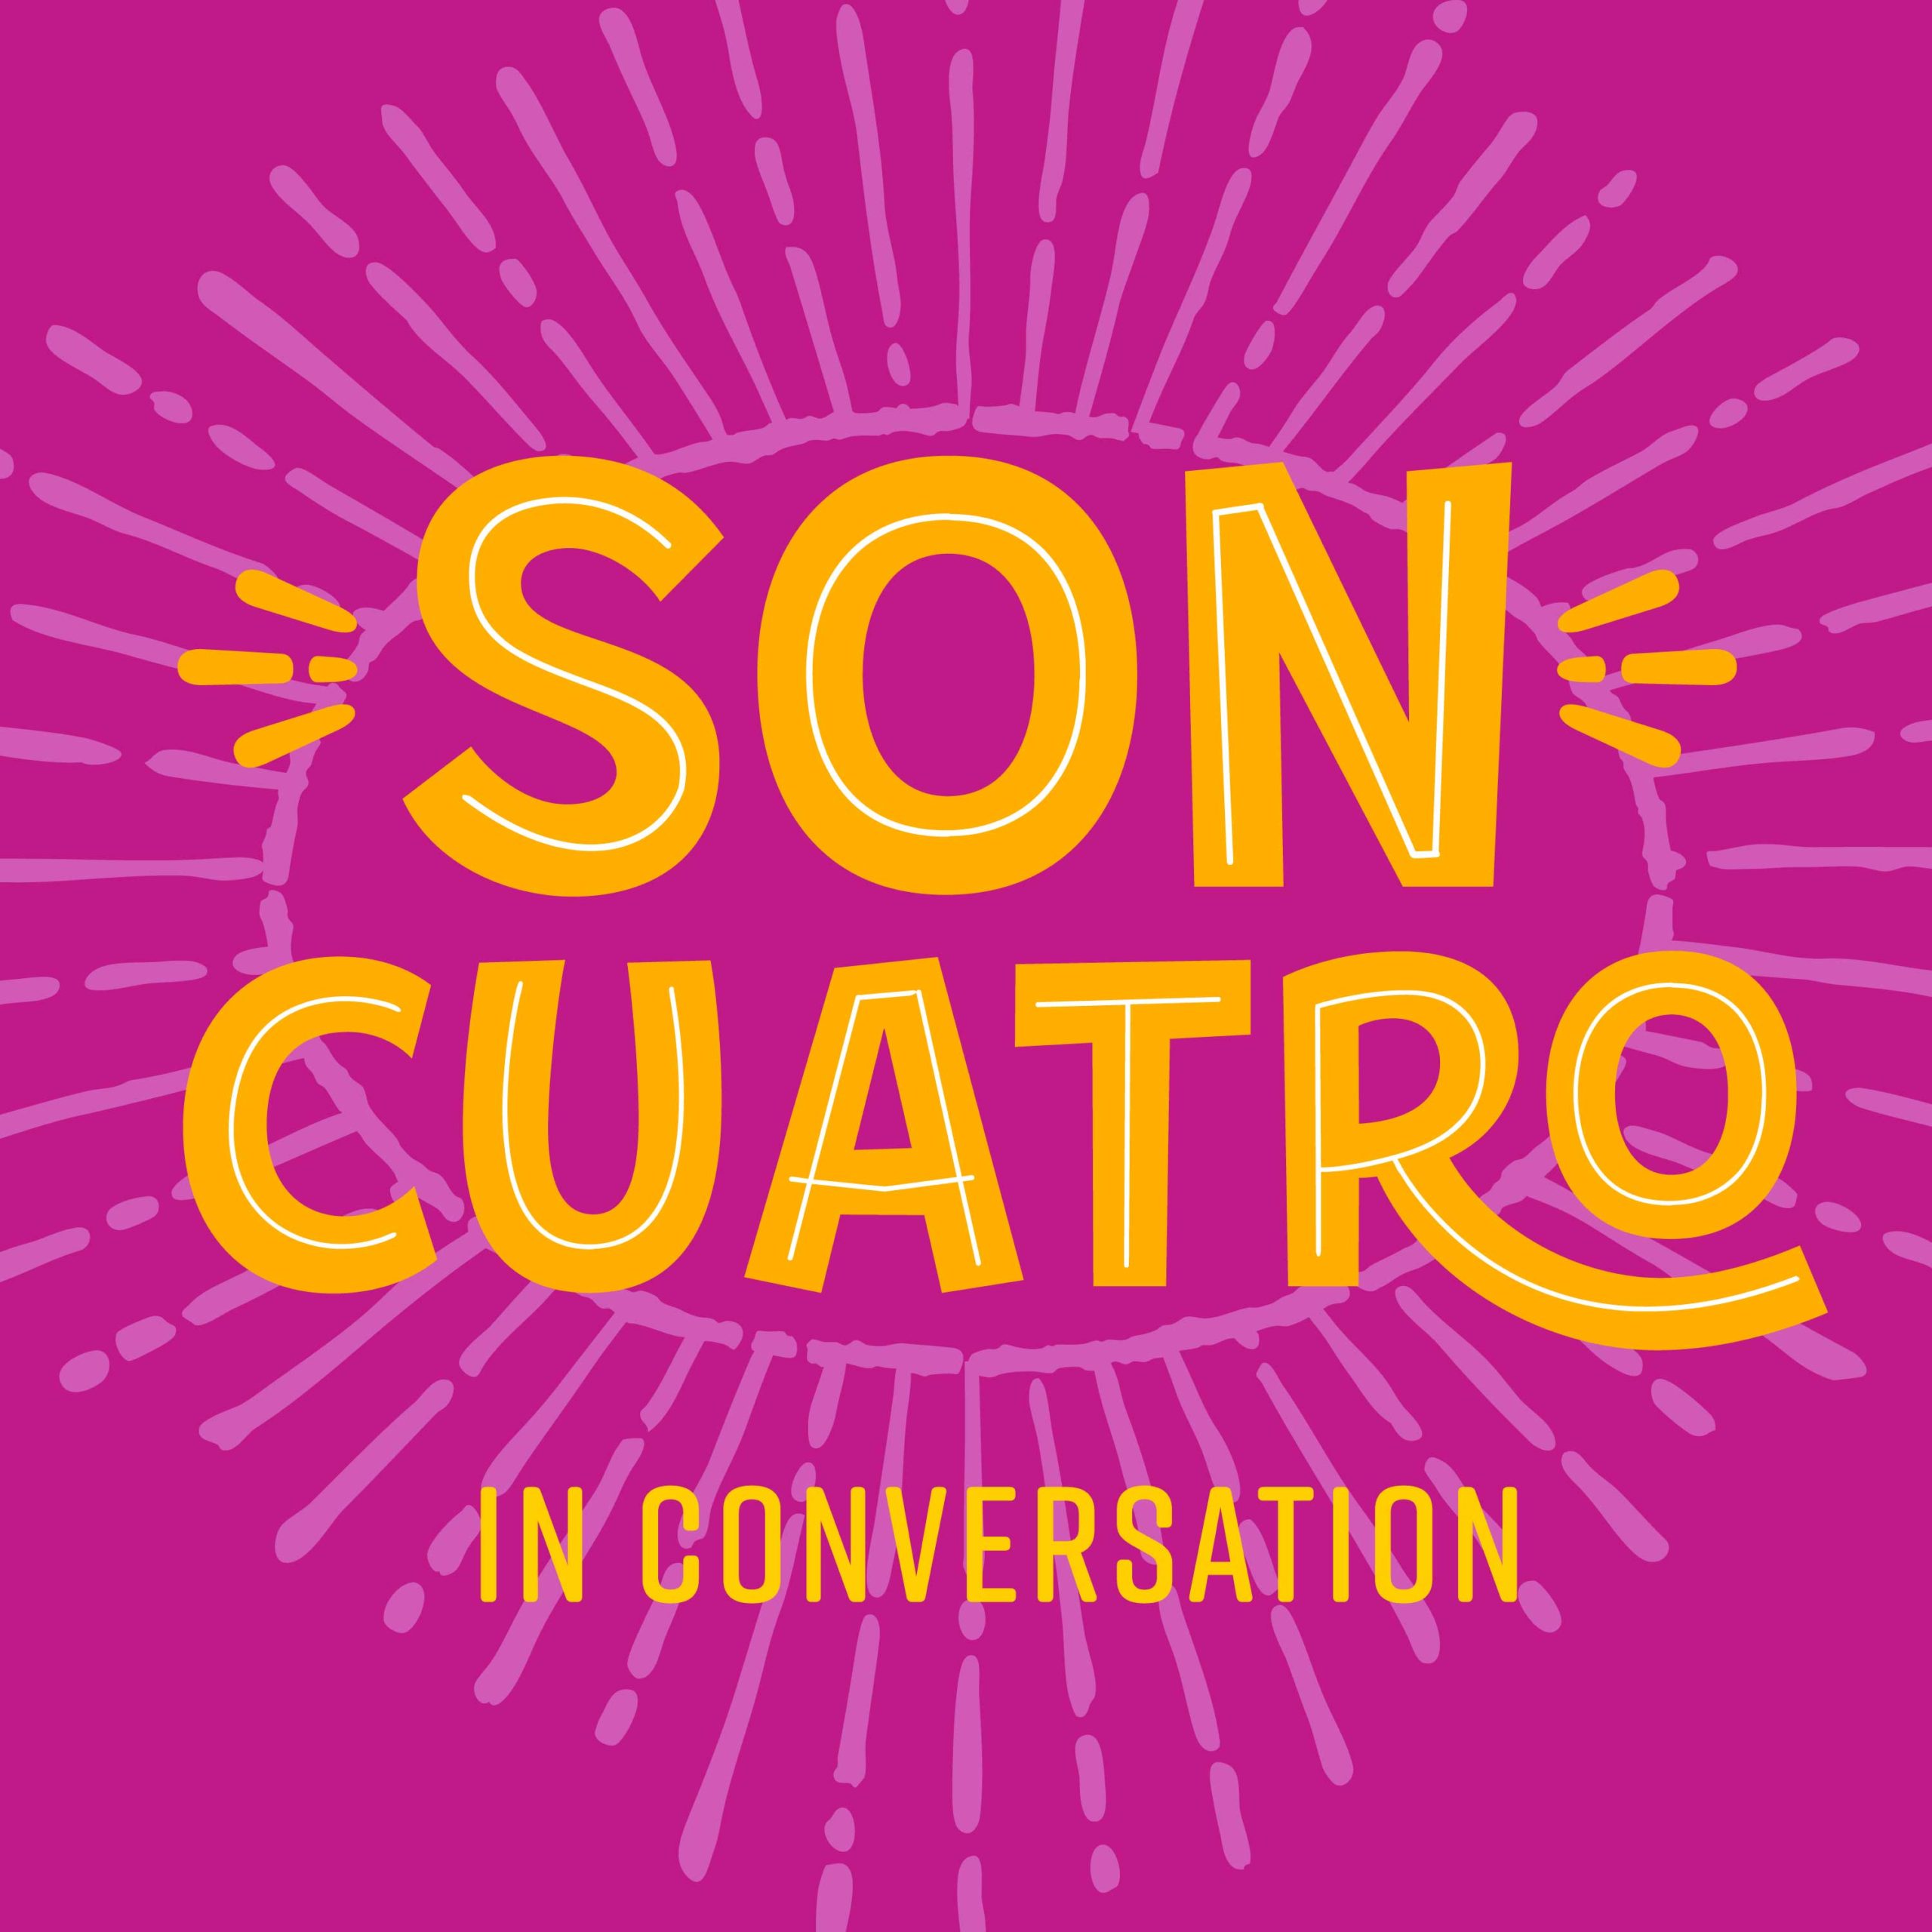 Son Cuatro: In Conversation